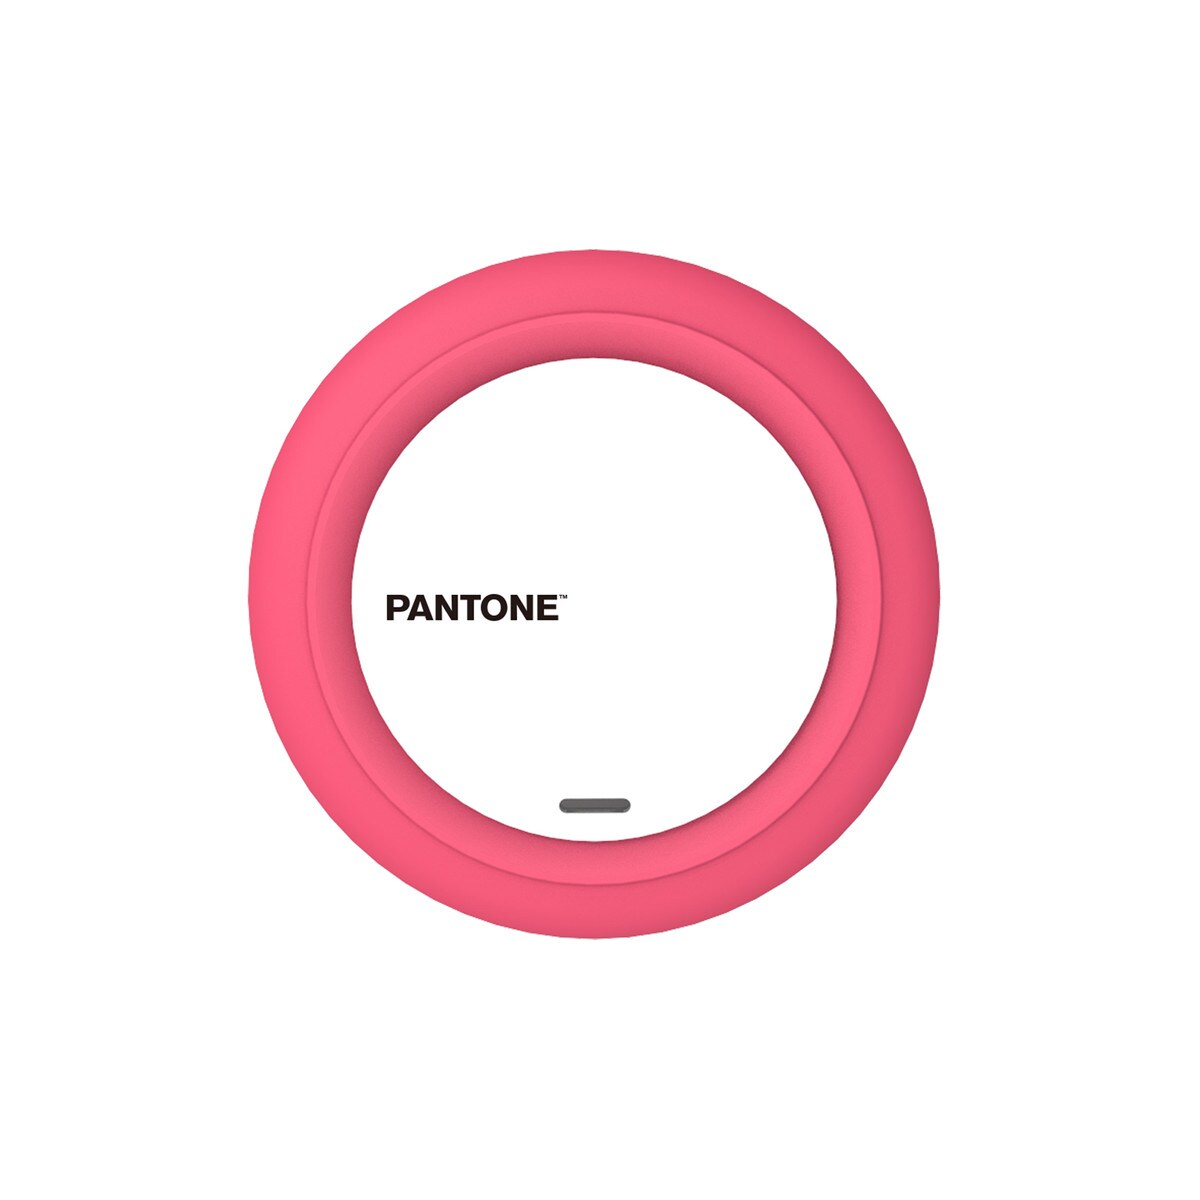 PANTONE QI Charger Kabellos Ladegerät pink   einfaches Aufladen ohne Kabel   Gesamtleistung  7,5 W   LED Ladeanzeige